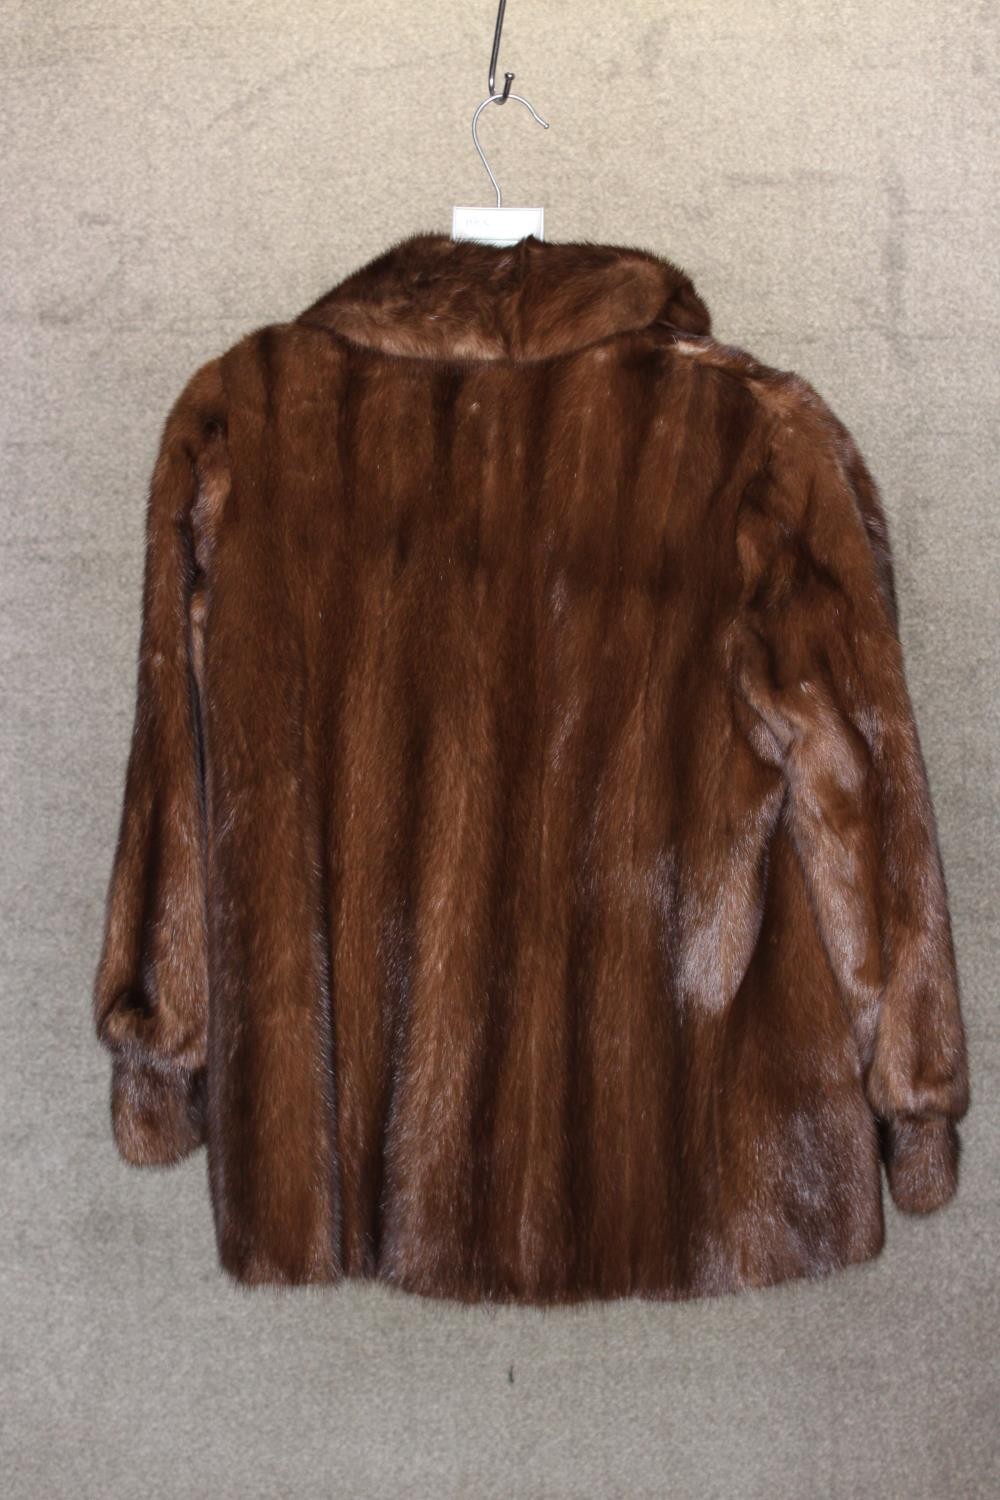 A vintage Mink fur coat made by Saga. - Image 2 of 5